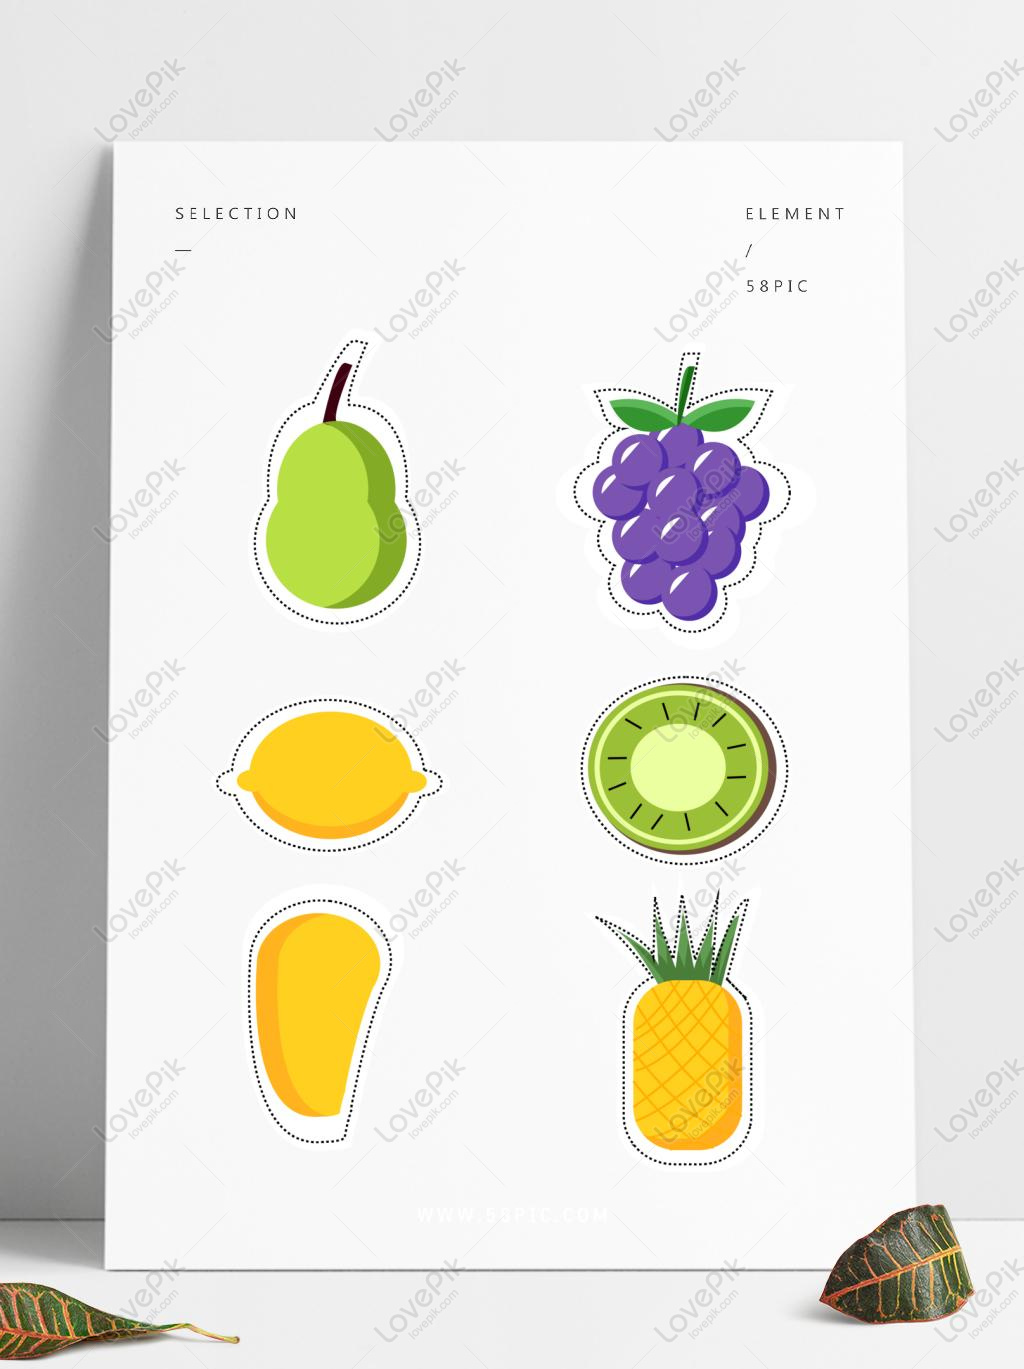 Bạn đang muốn tìm kiếm những hình ảnh trái cây đẹp mắt để tải về vẽ hay làm đồ hoạ? Hãy ghé thăm trang web chúng tôi với rất nhiều Fruit Stickers Images HD Pictures For Free Vector Download, đảm bảo sẽ làm bạn hài lòng!